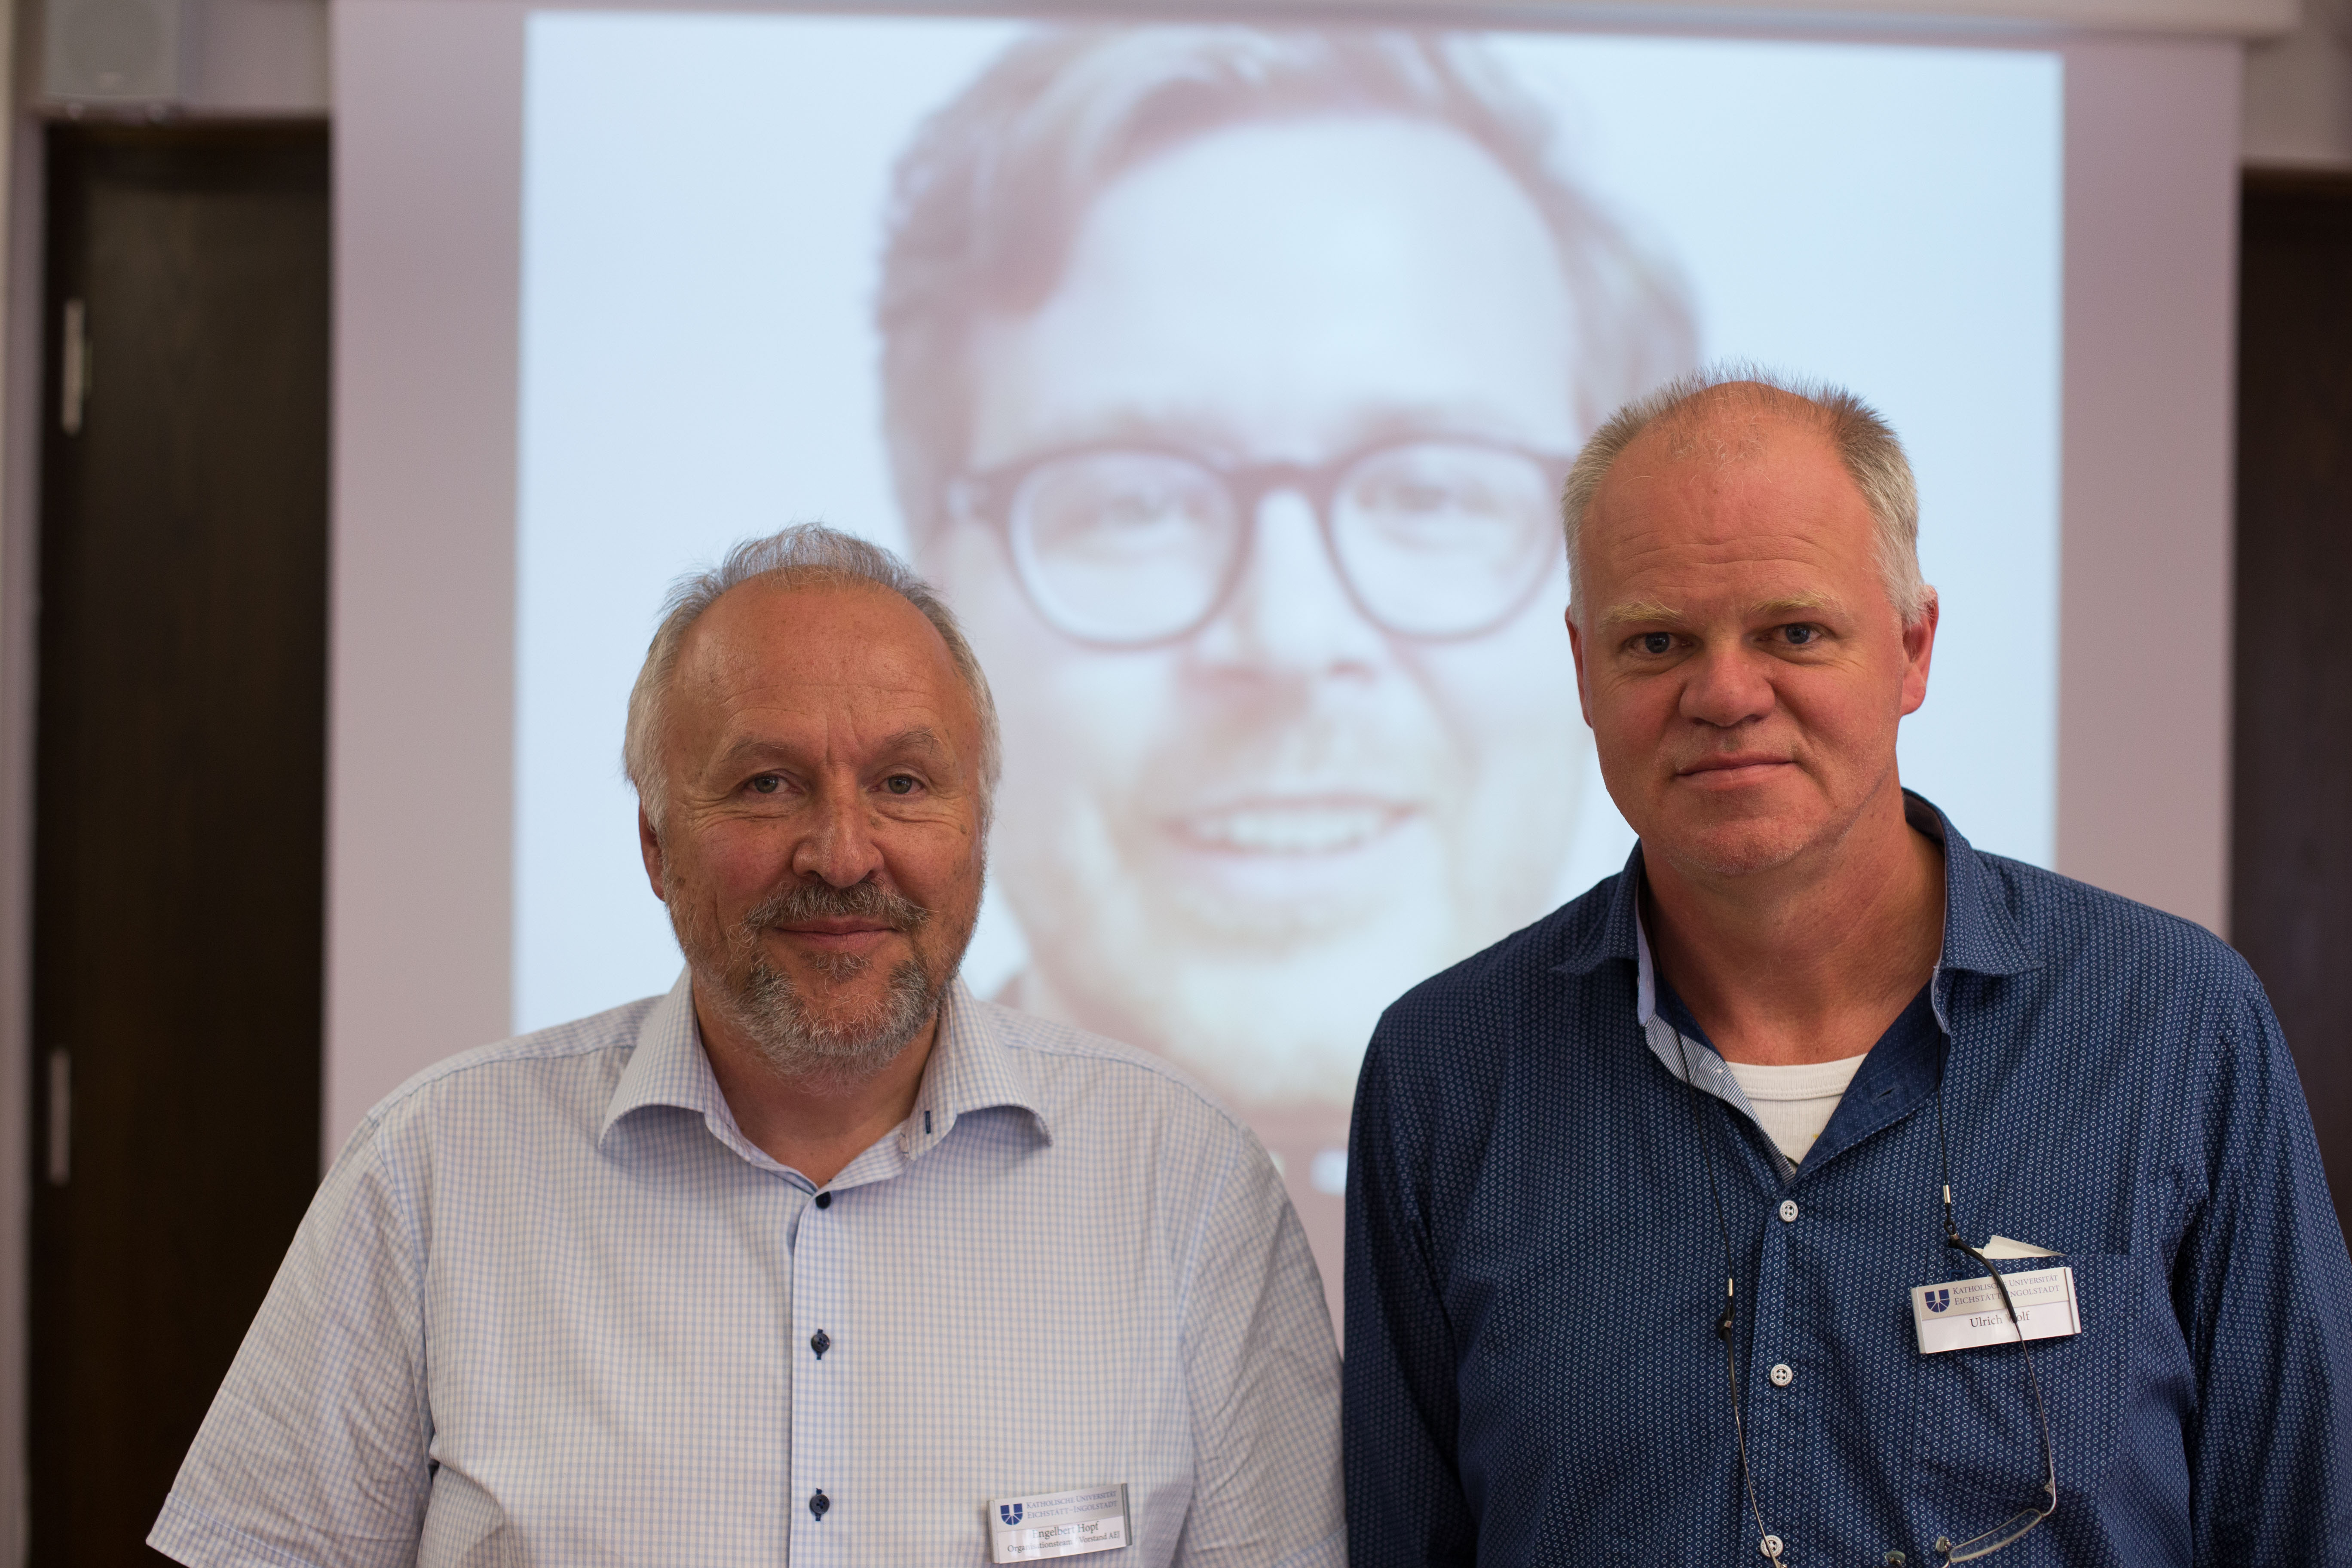 Engelbert Hopf (links) moderierte das Gespräch zwischen Frederik Obermaier (Mitte, per Skype) und Ulrich Wolf (rechts).